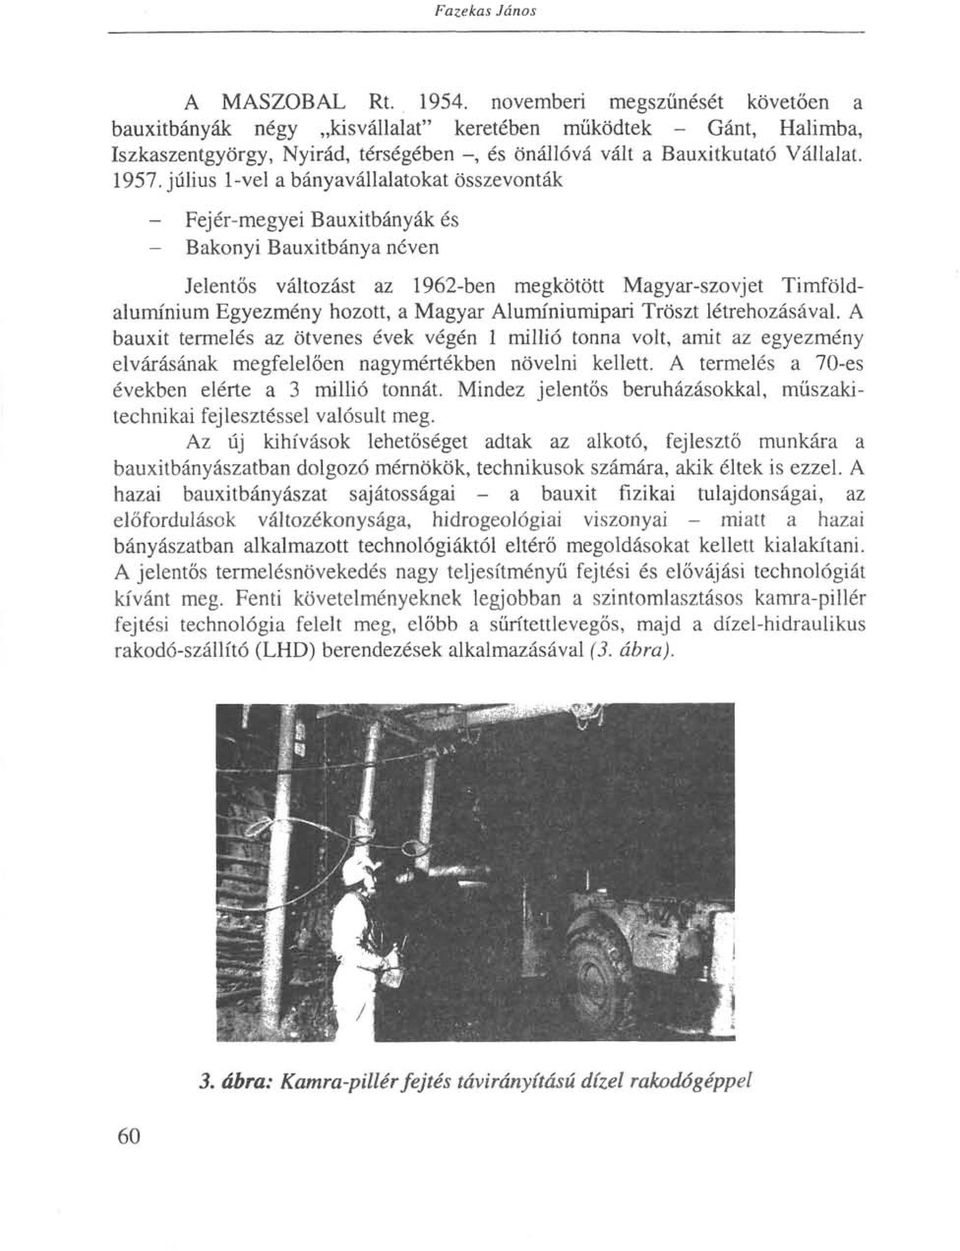 július 1-vel a bányavállalatokat összevonták - Fej ér-megyei Bauxitbányák és - Bakonyi Bauxitbánya néven Jelentős változást az 1962-ben megkötött Magyar-szovjet Timföldalumínium Egyezmény hozott, a